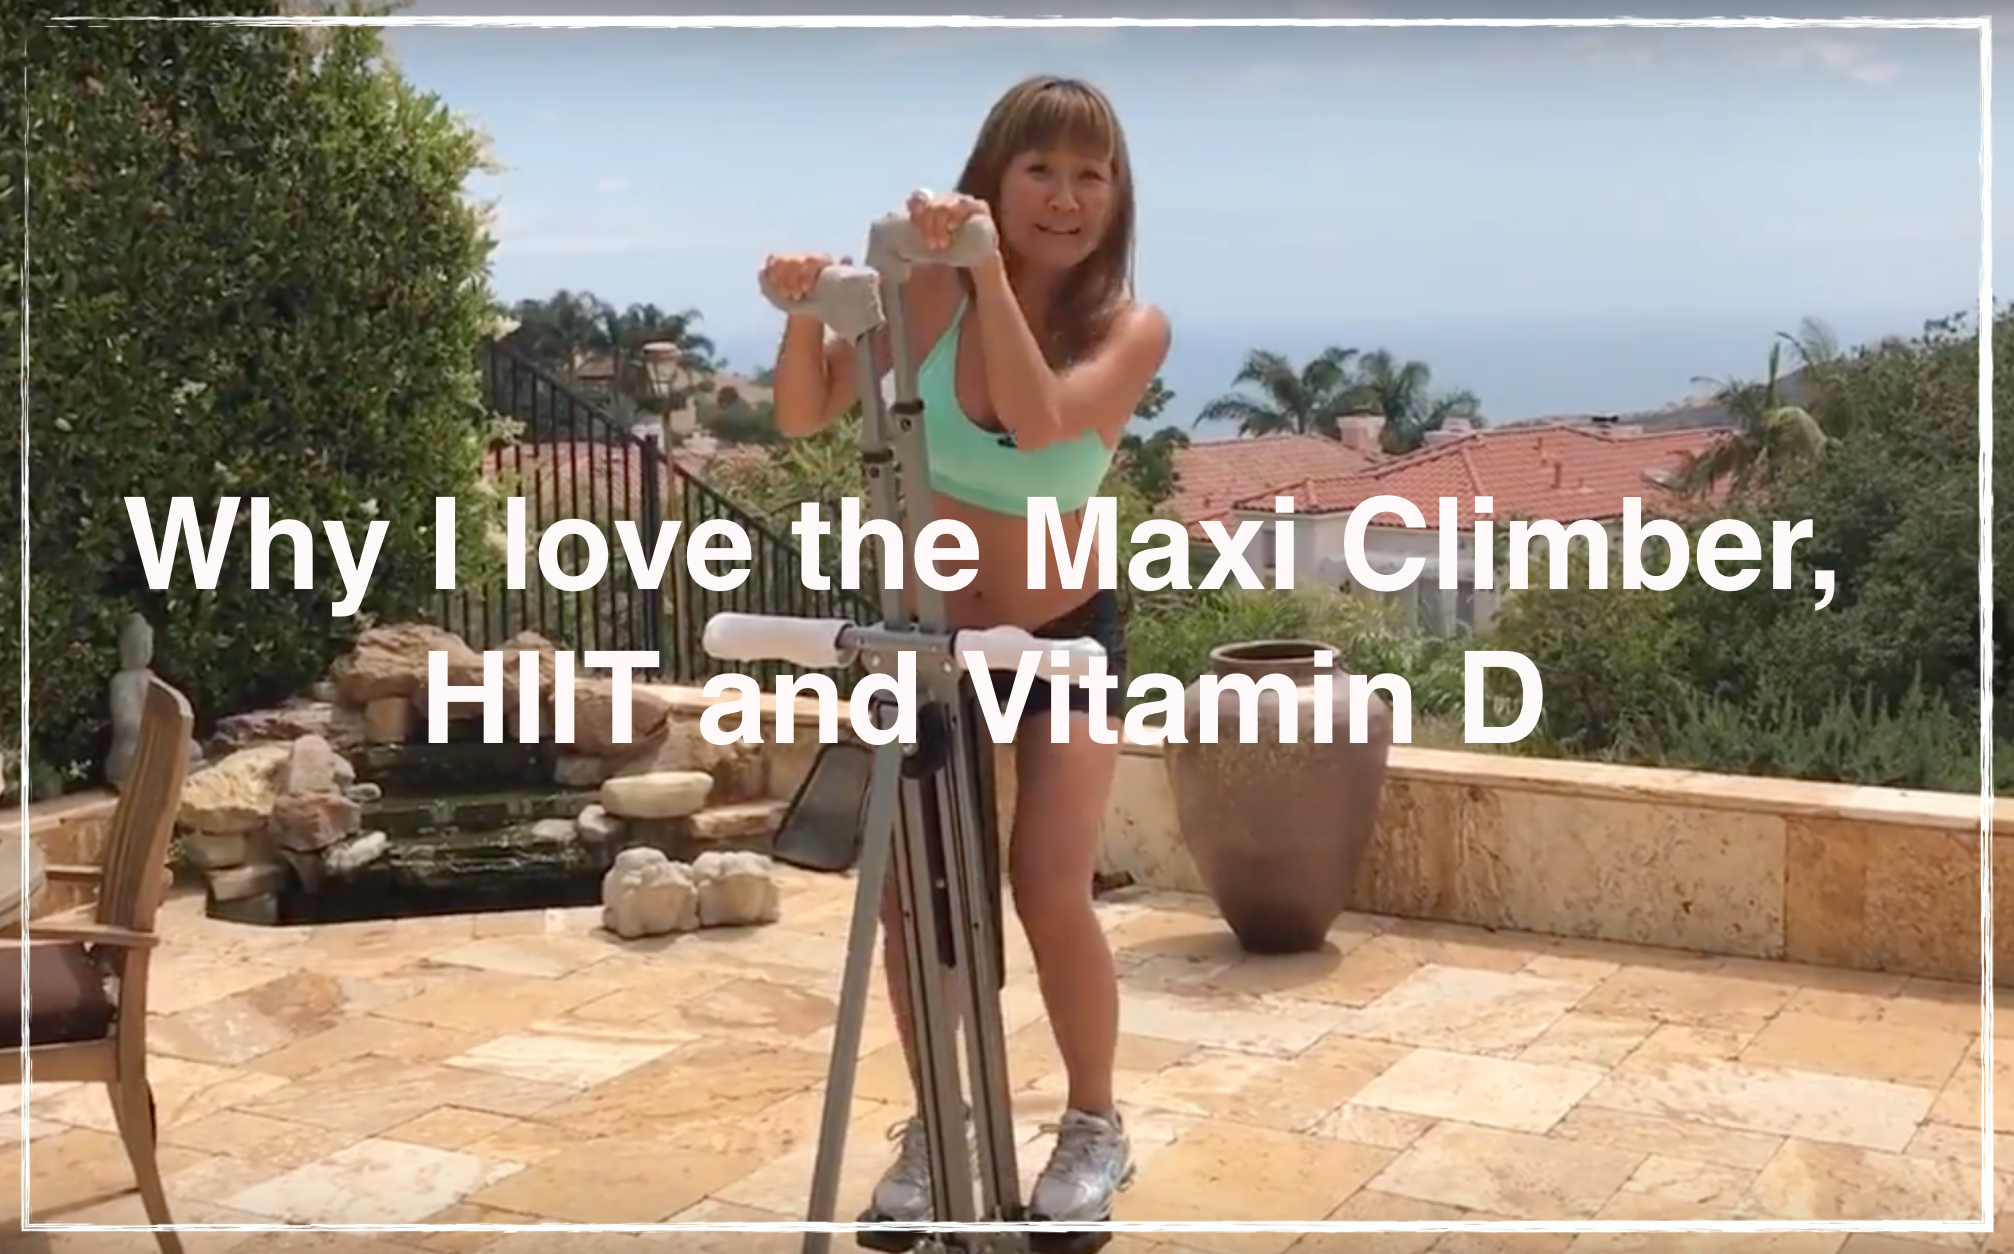 I love the Maxi Climber